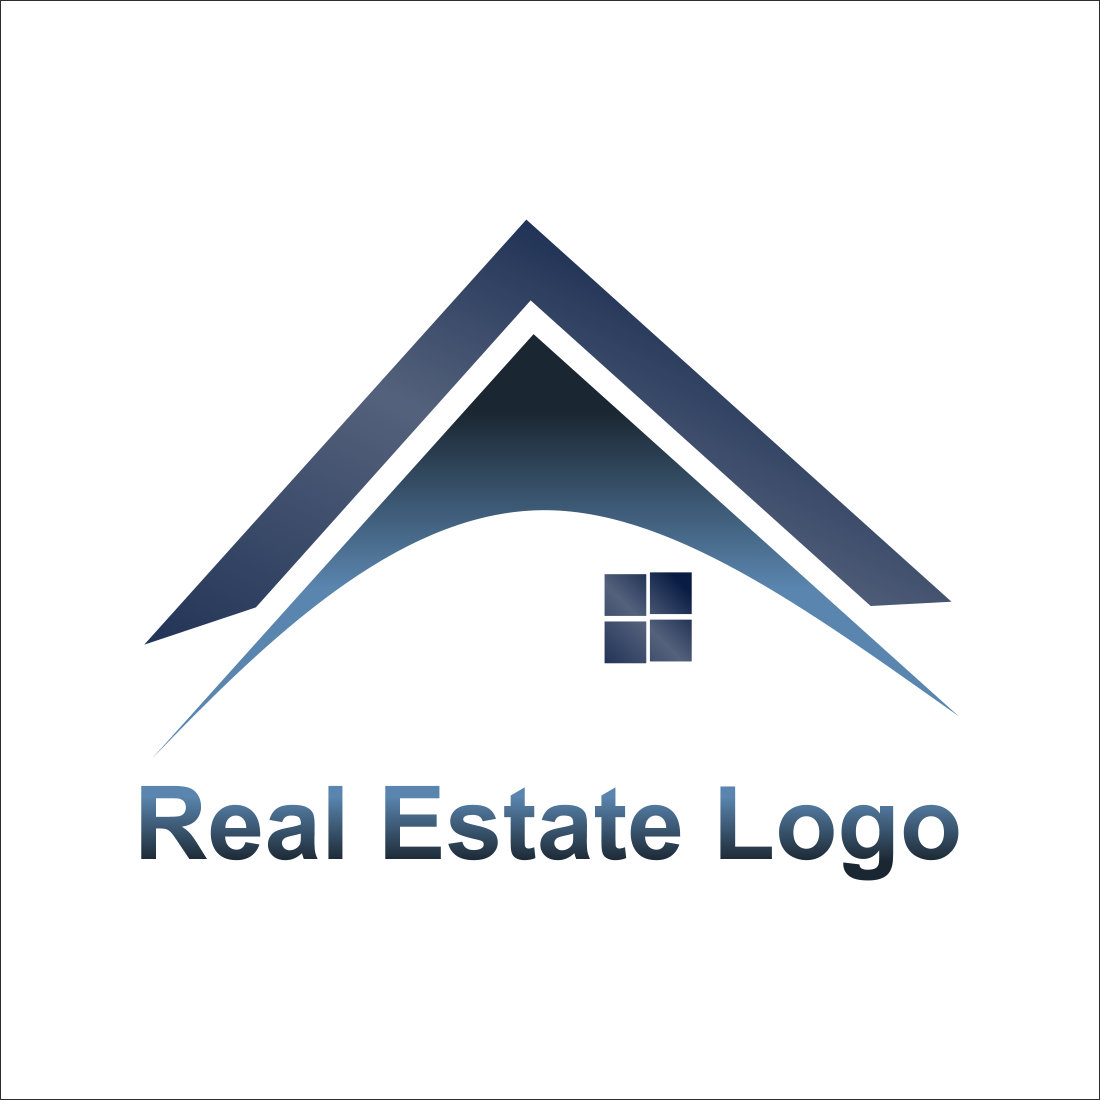 Real Estate Letter C Logo Design preview image.